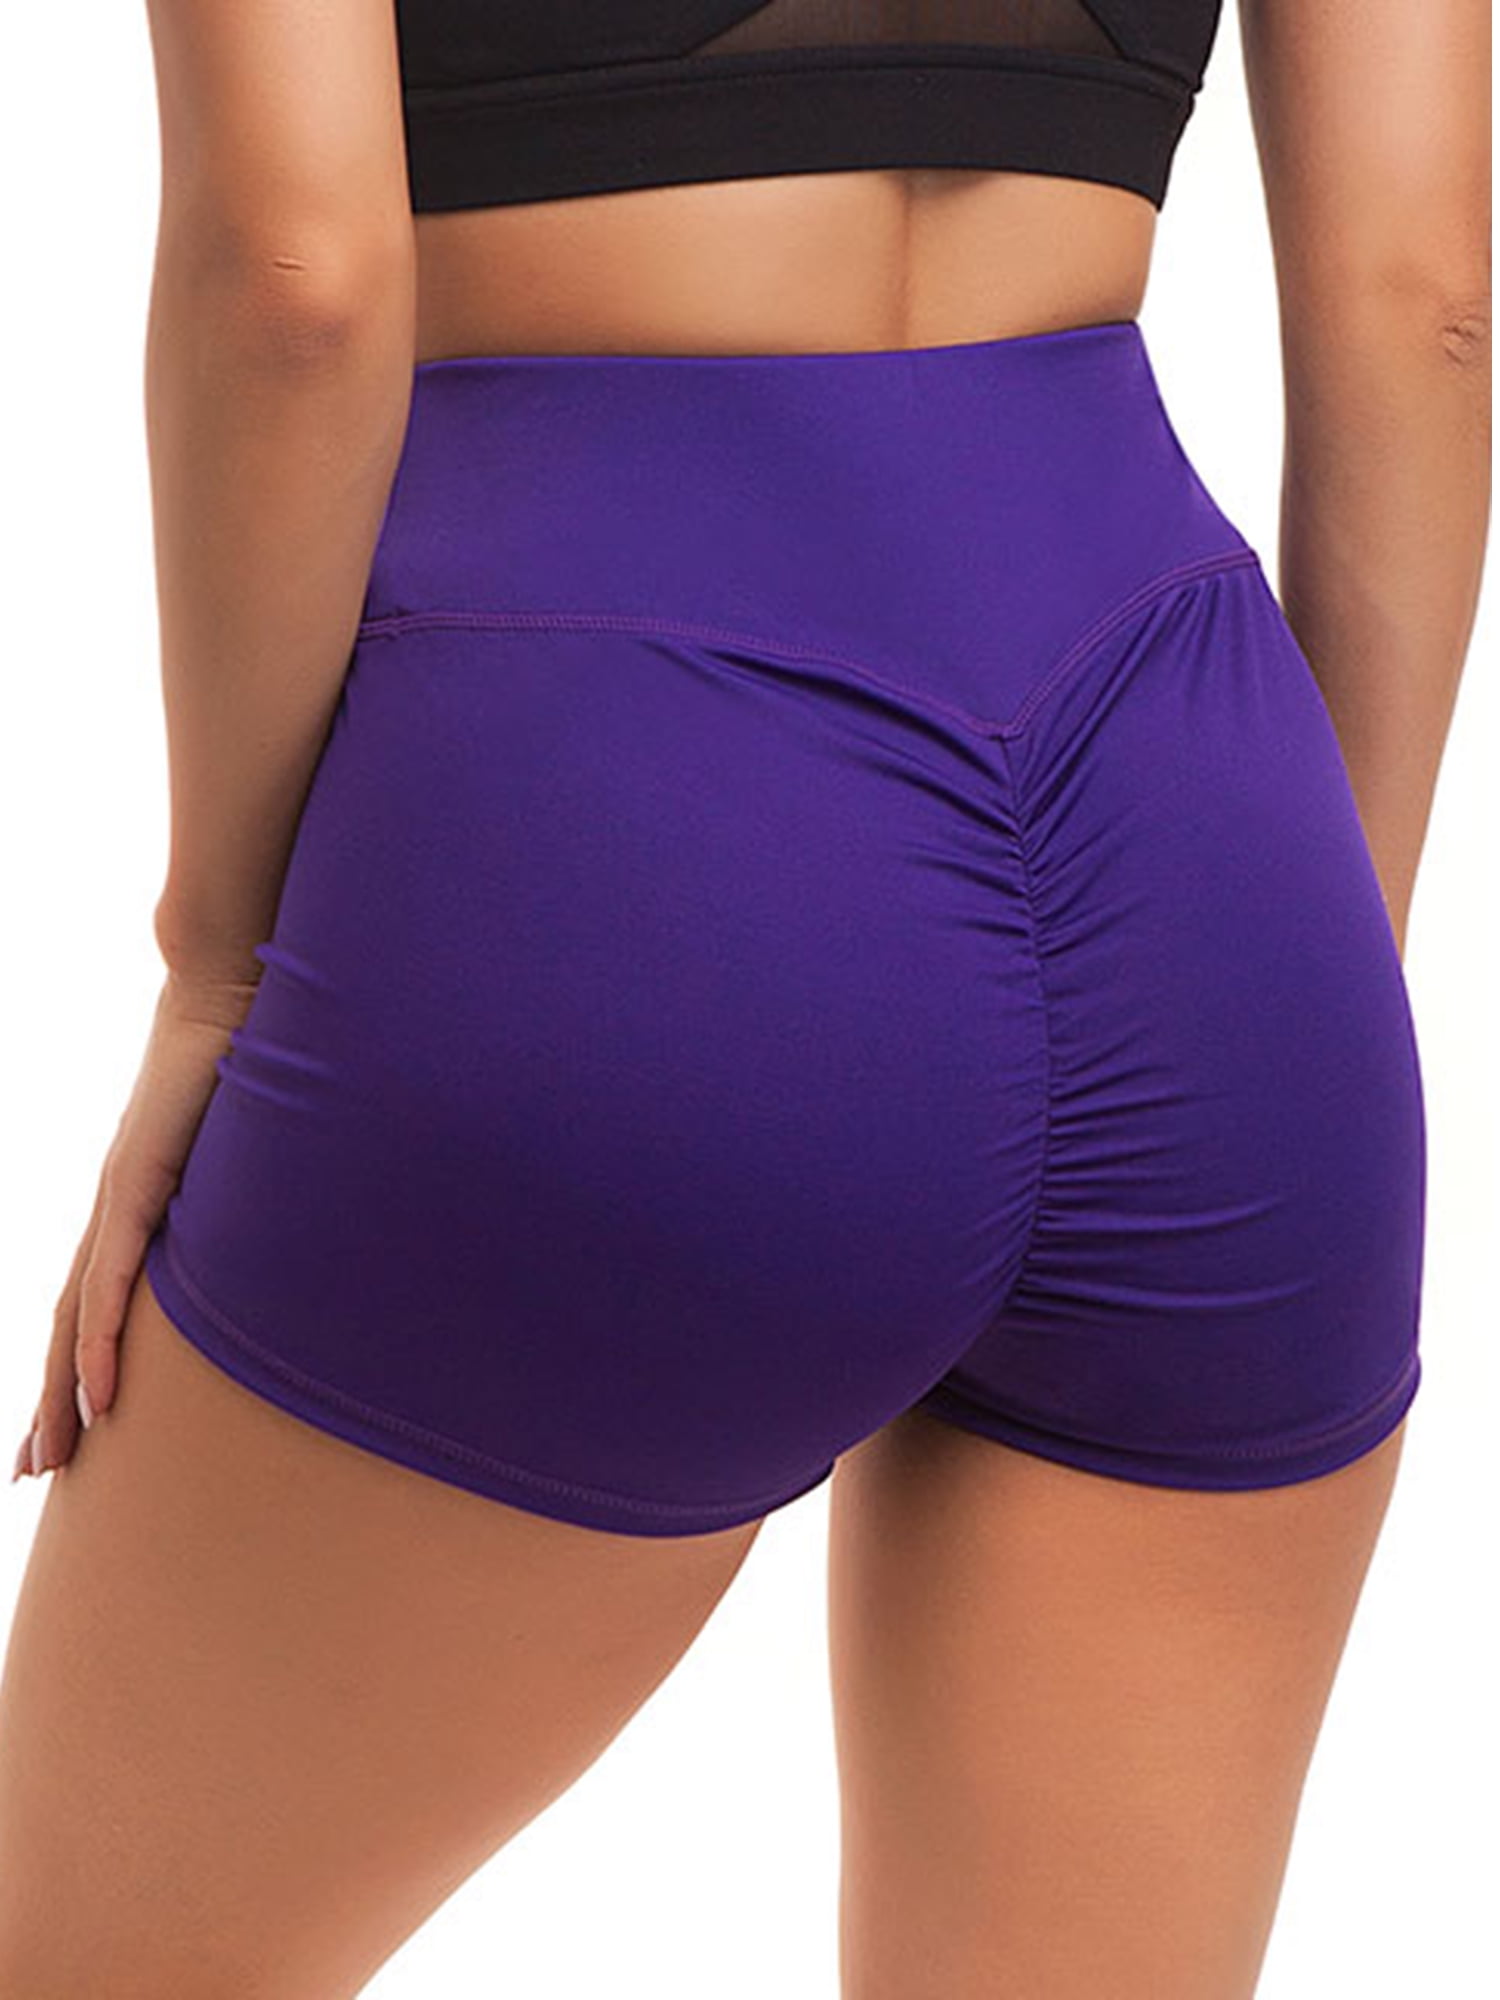 Hot Women's High Waist Yoga Shorts Butt Lift Scrunch Compression Sports Pants A8 